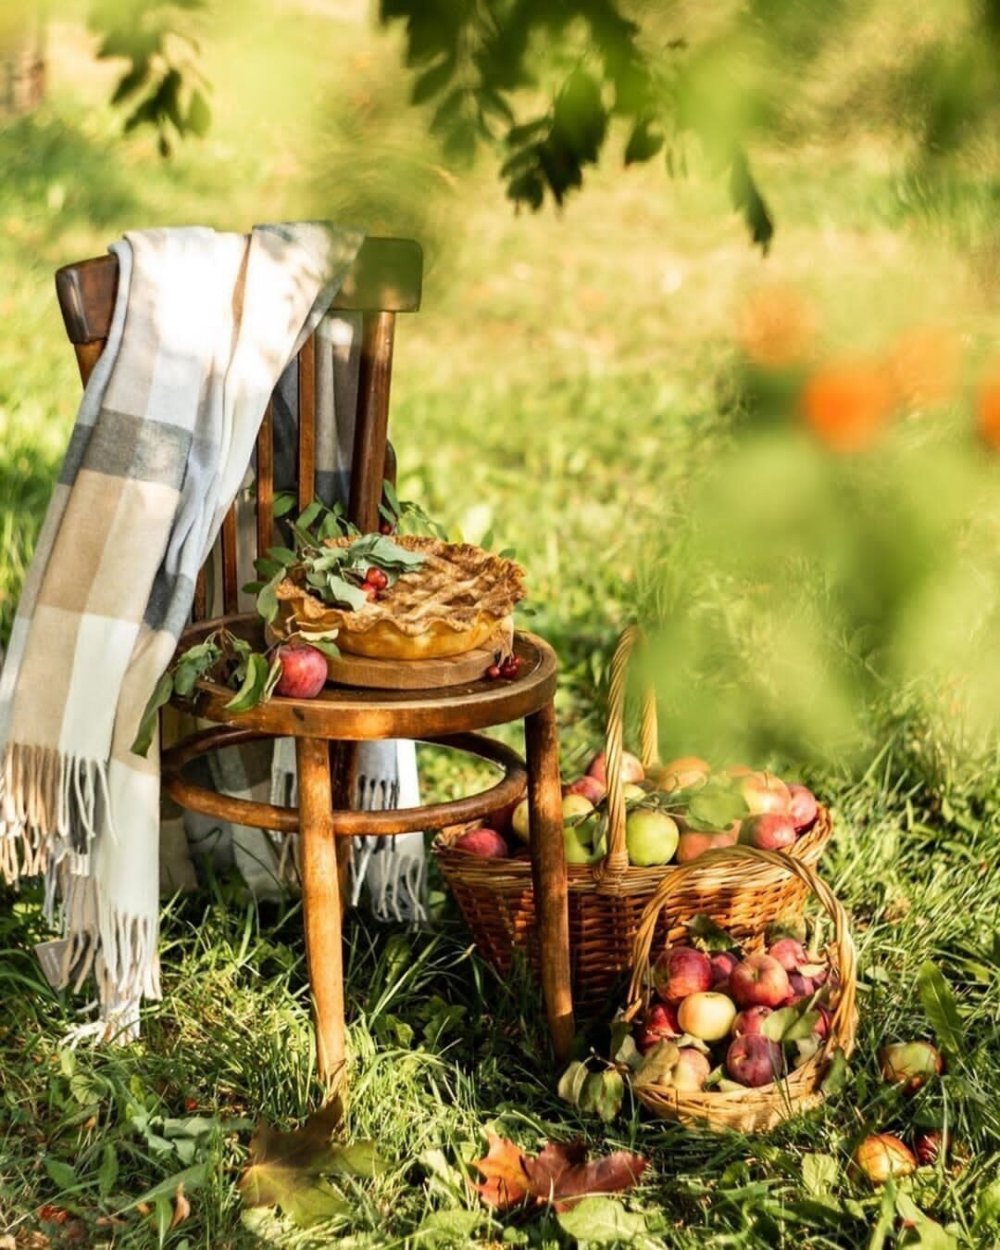 Осенний пикник на природе